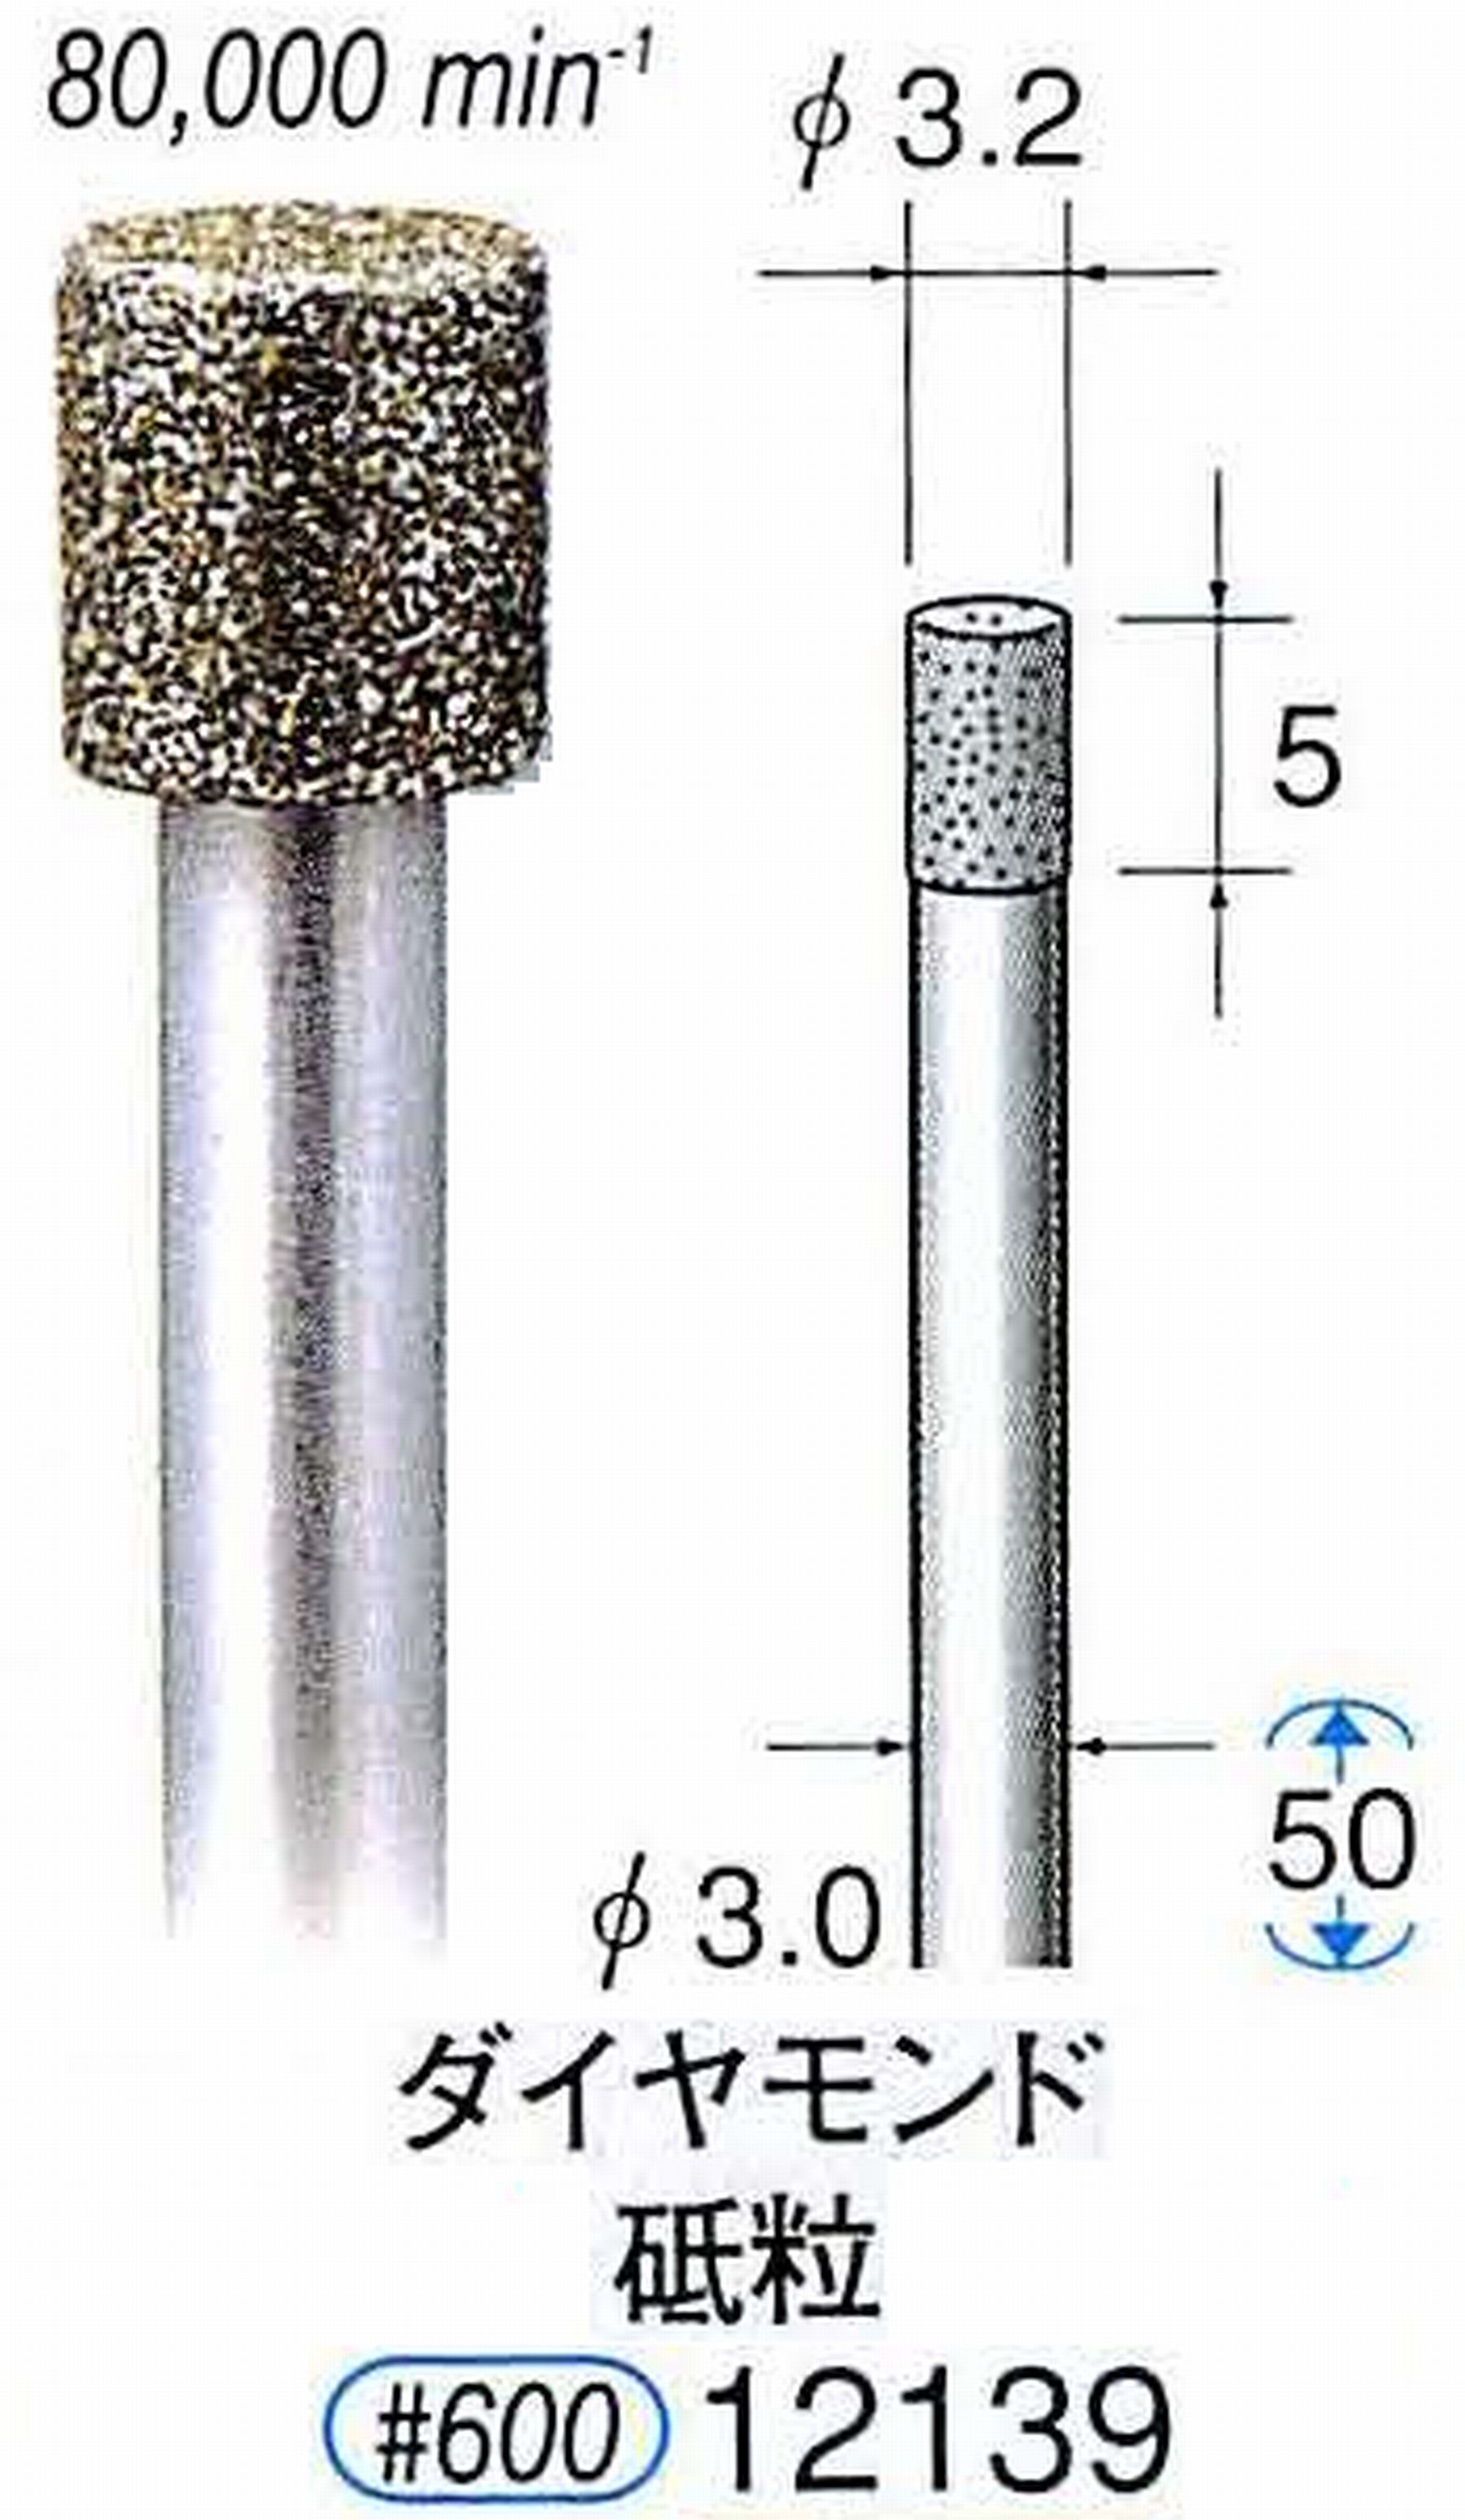 ナカニシ/NAKANISHI 電着ダイヤモンド ダイヤモンド砥粒 軸径(シャンク)φ3.0mm 12139